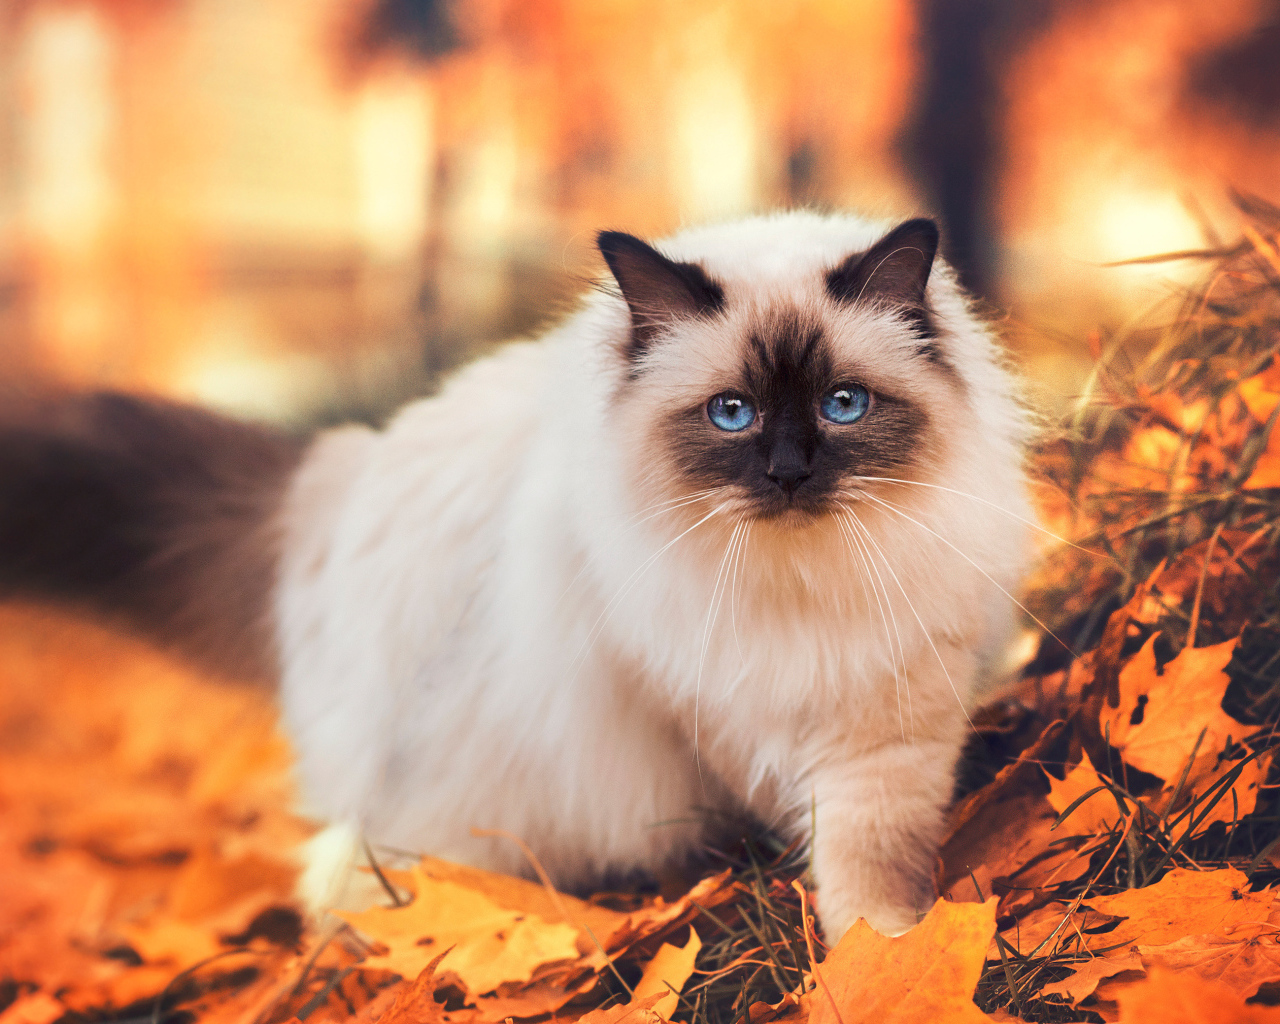 Породистый сиамский кот с голубыми глазами гуляет по желтой листве